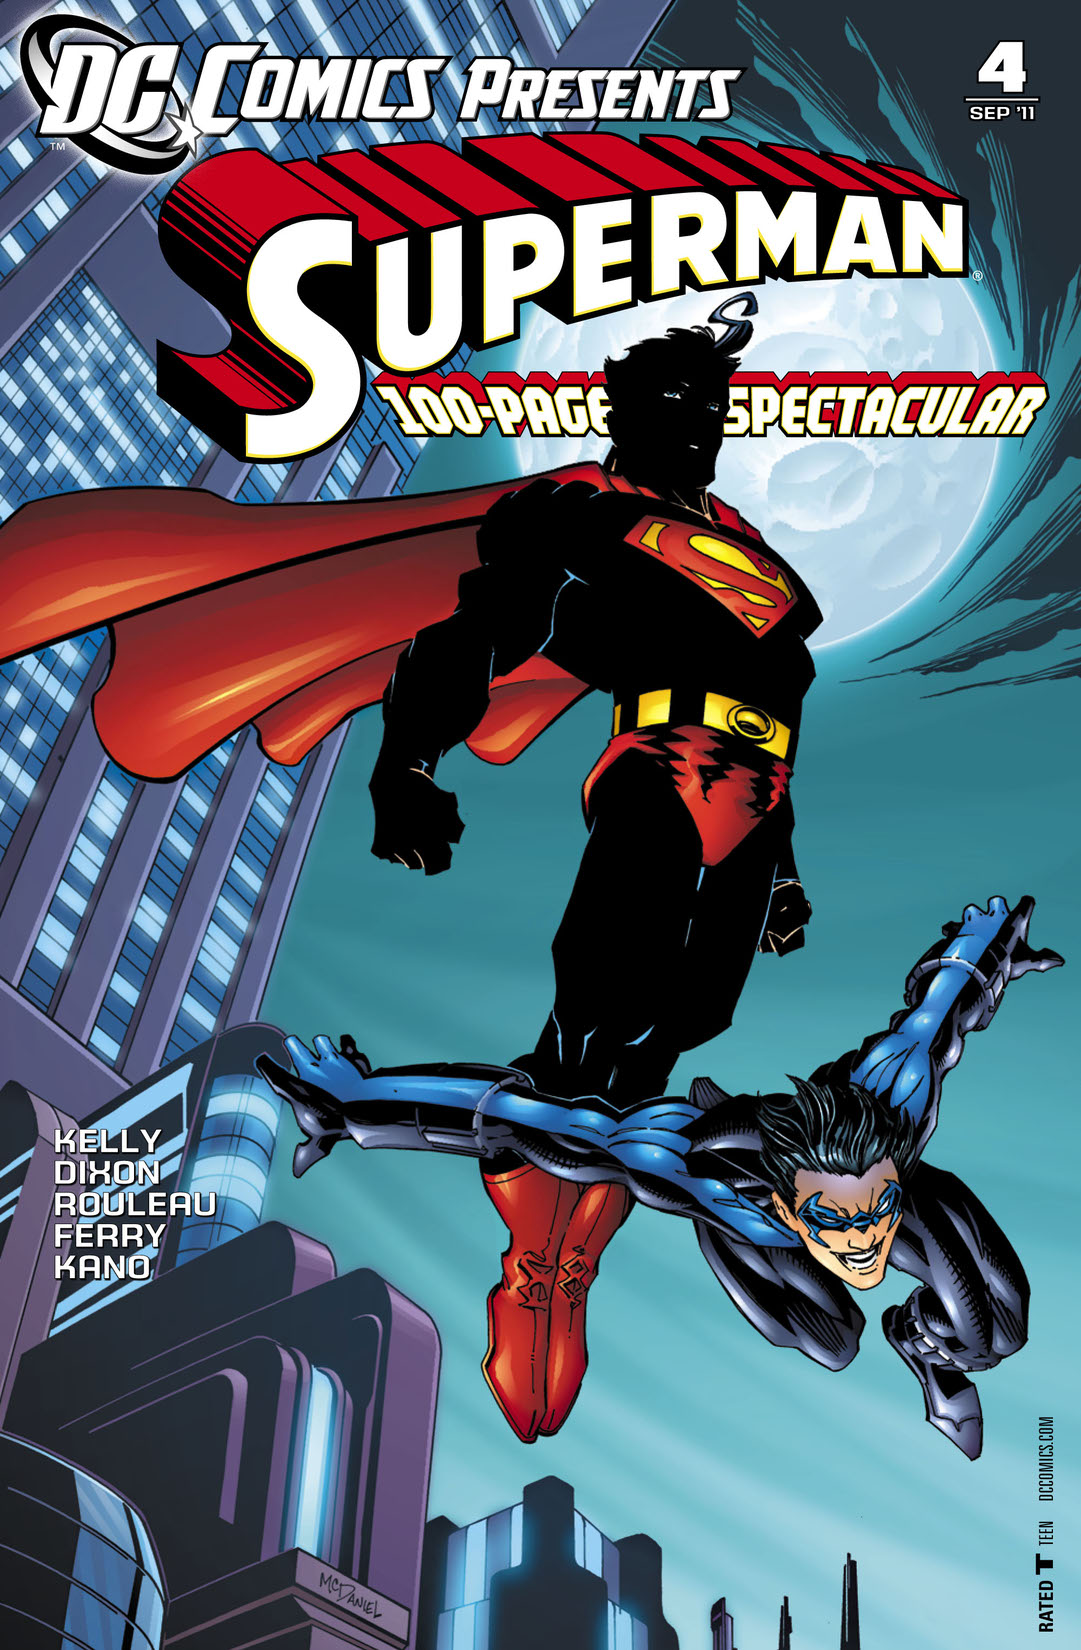 DC Comics Presents: Superman (2010-) #4 preview images